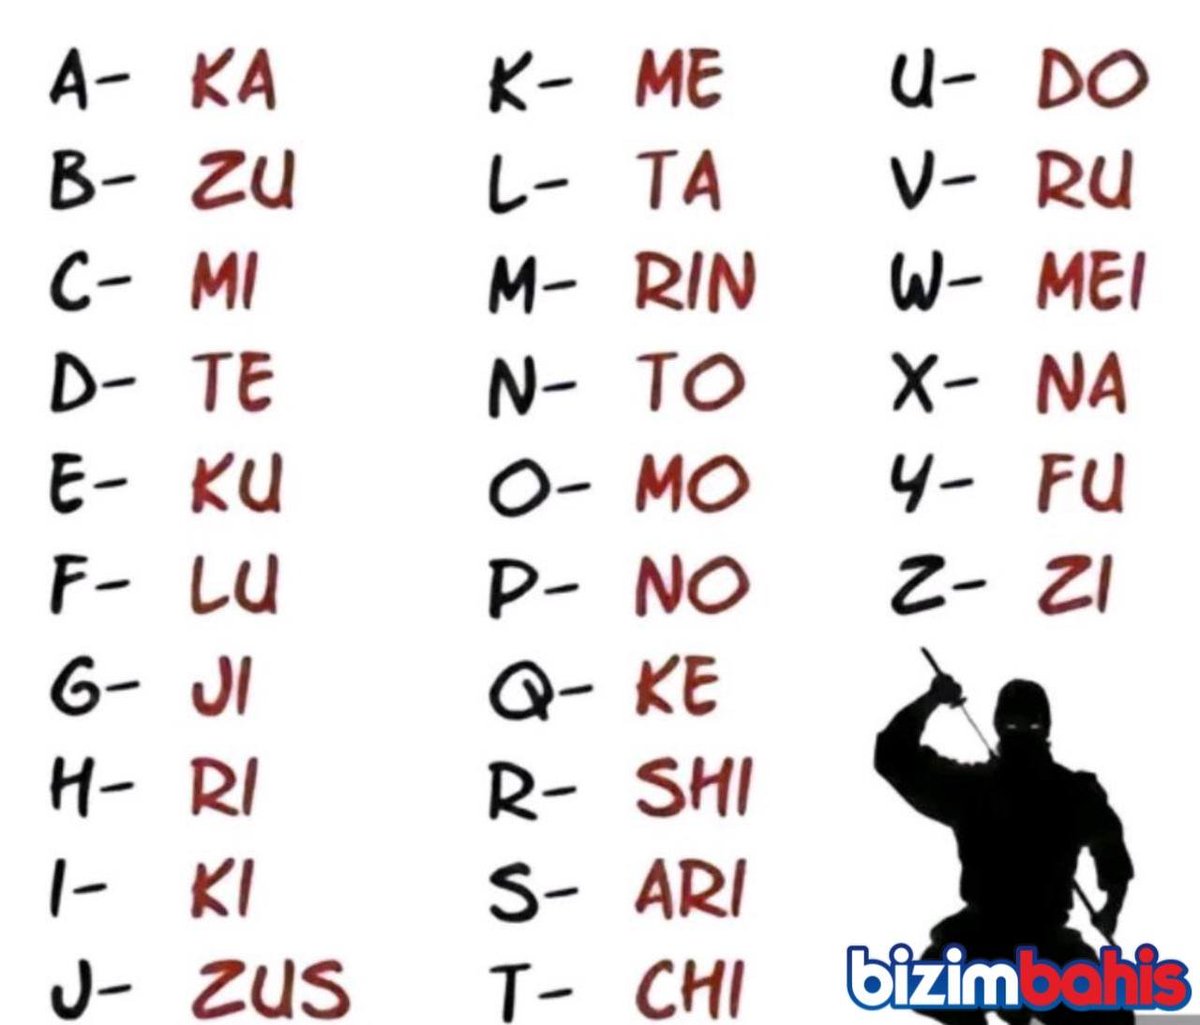 Sizin Japon alfabesine göre isim telaffuzunuz nasıl? 👇